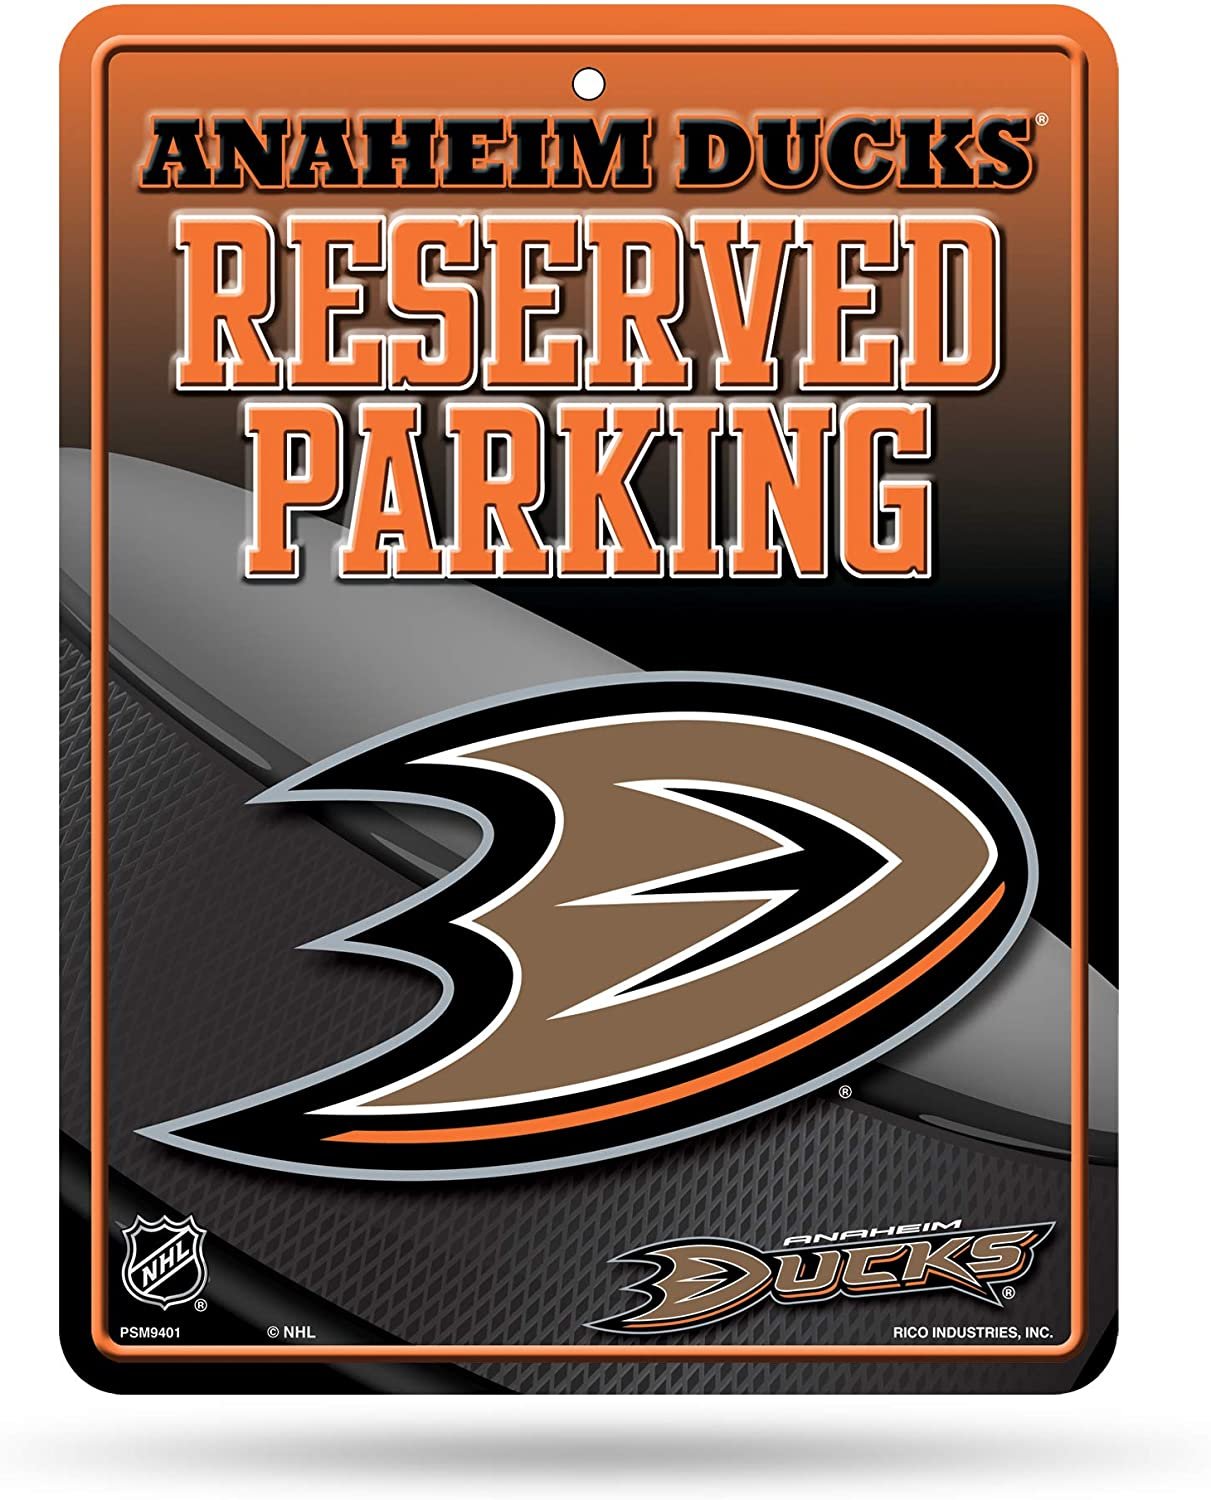 Anaheim Ducks 8-Inch by 11-Inch Metal Parking Sign Décor